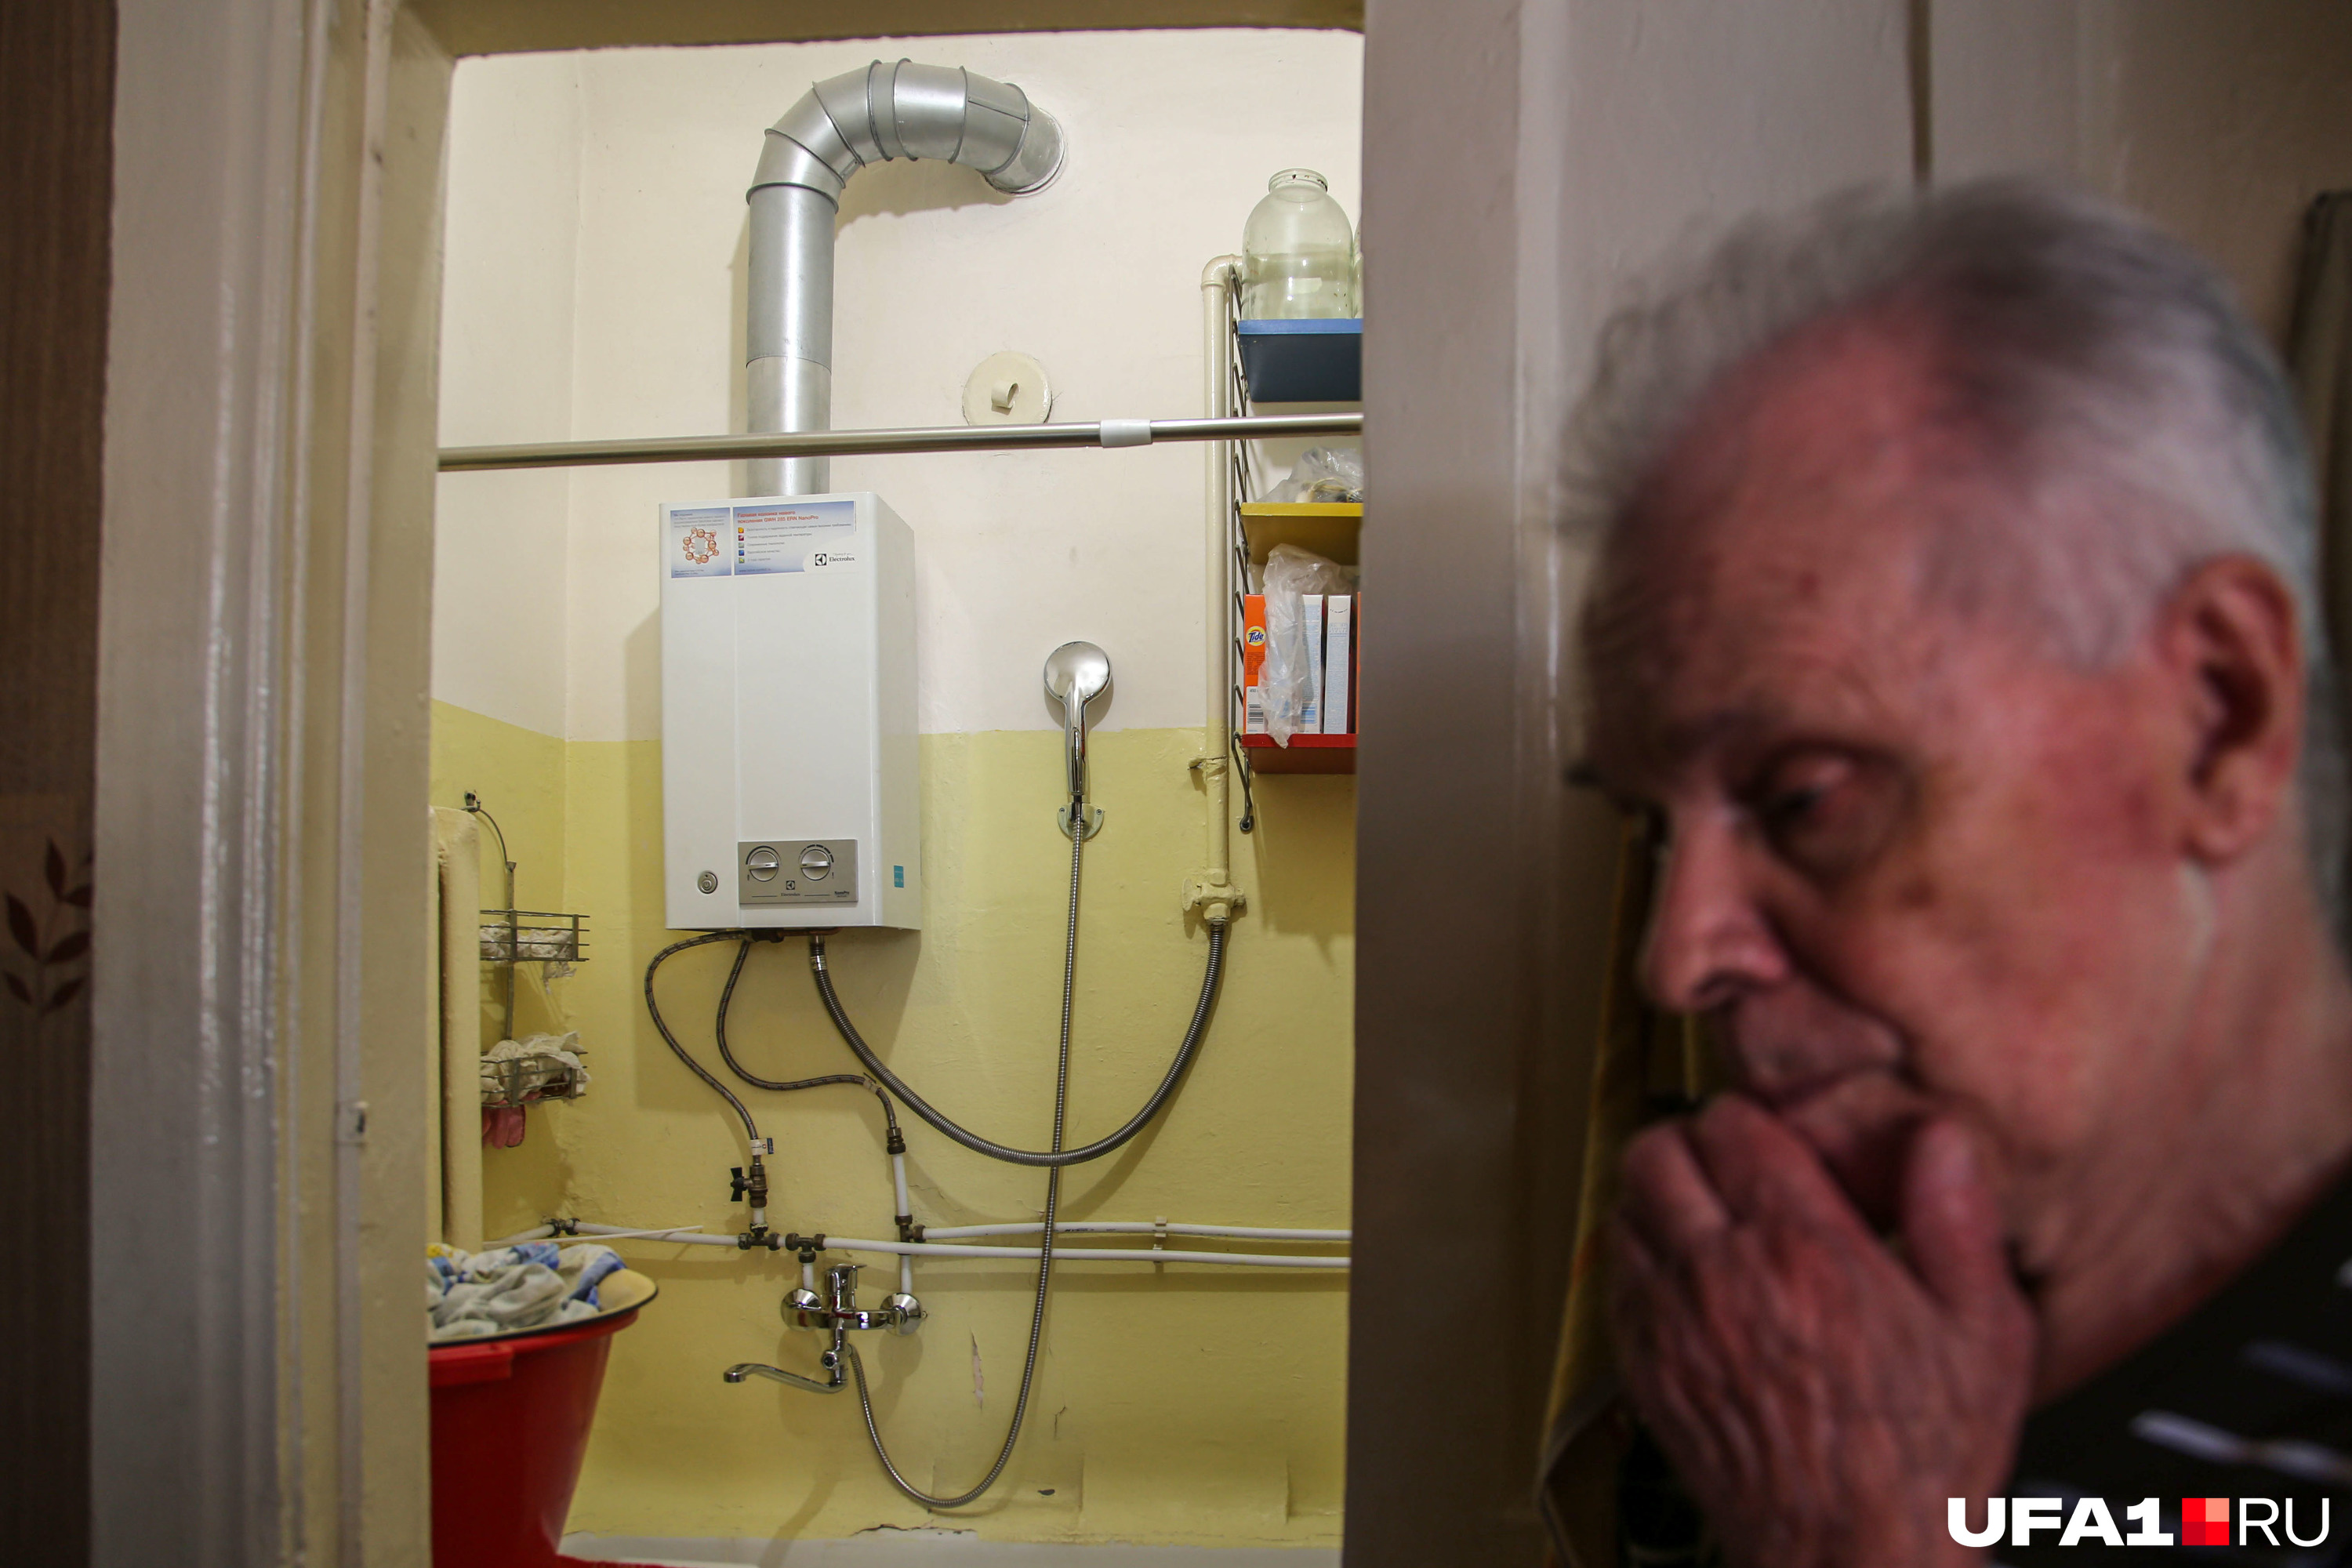 83-летний Герман пока не решил, будет ли переходить на электрический водонагреватель